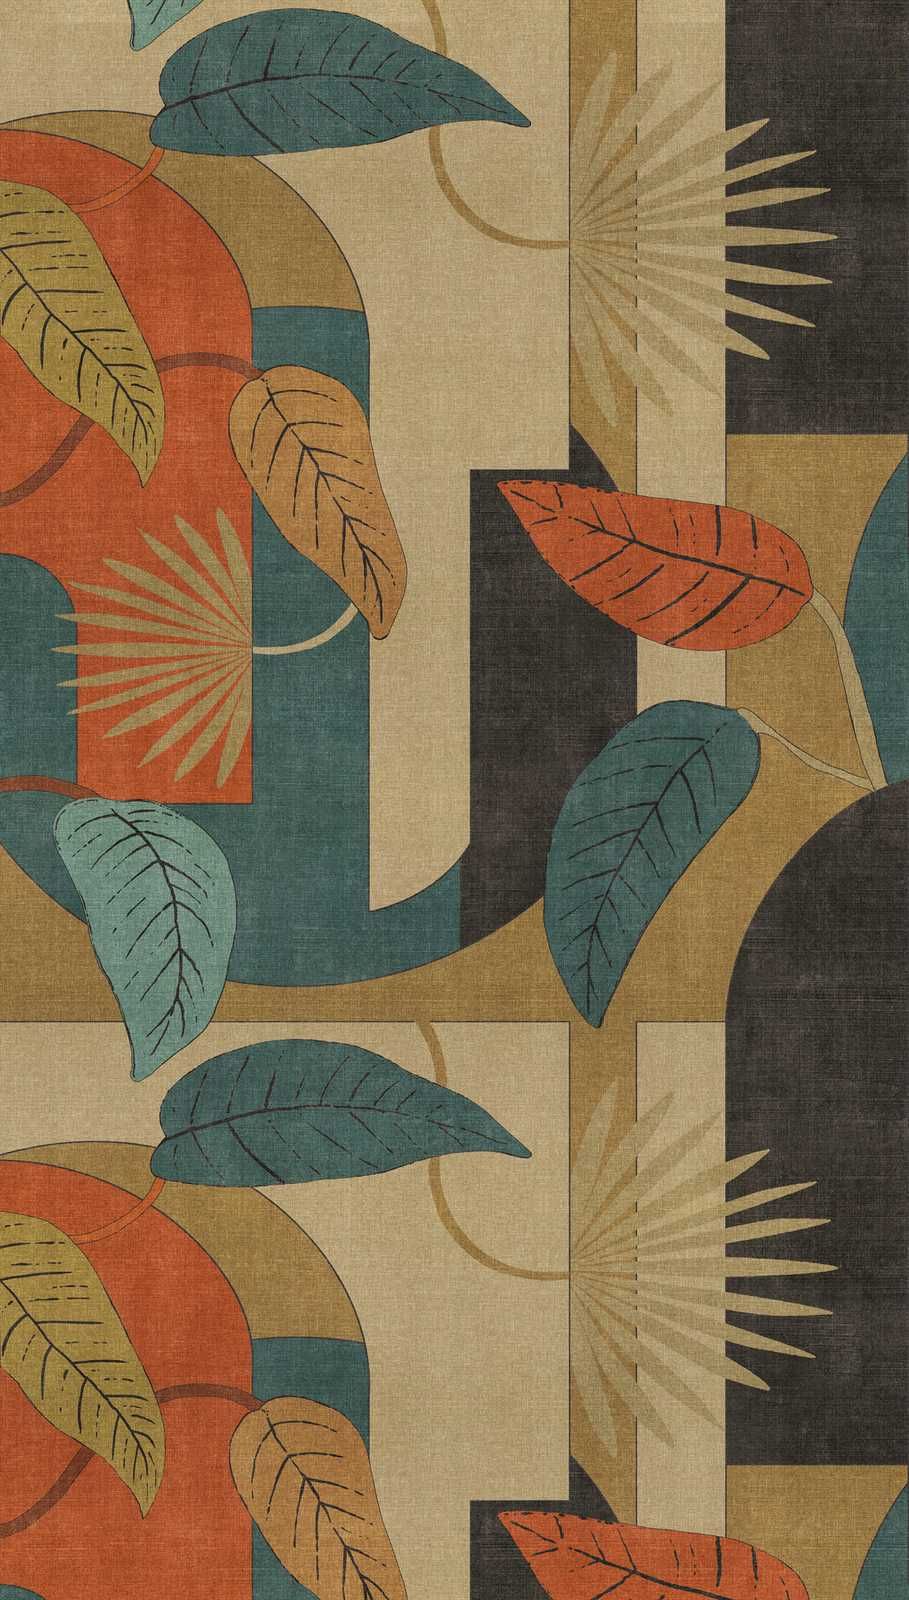             Papier peint abstrait intissé avec feuilles et motifs graphiques - beige, bleu, rouge
        